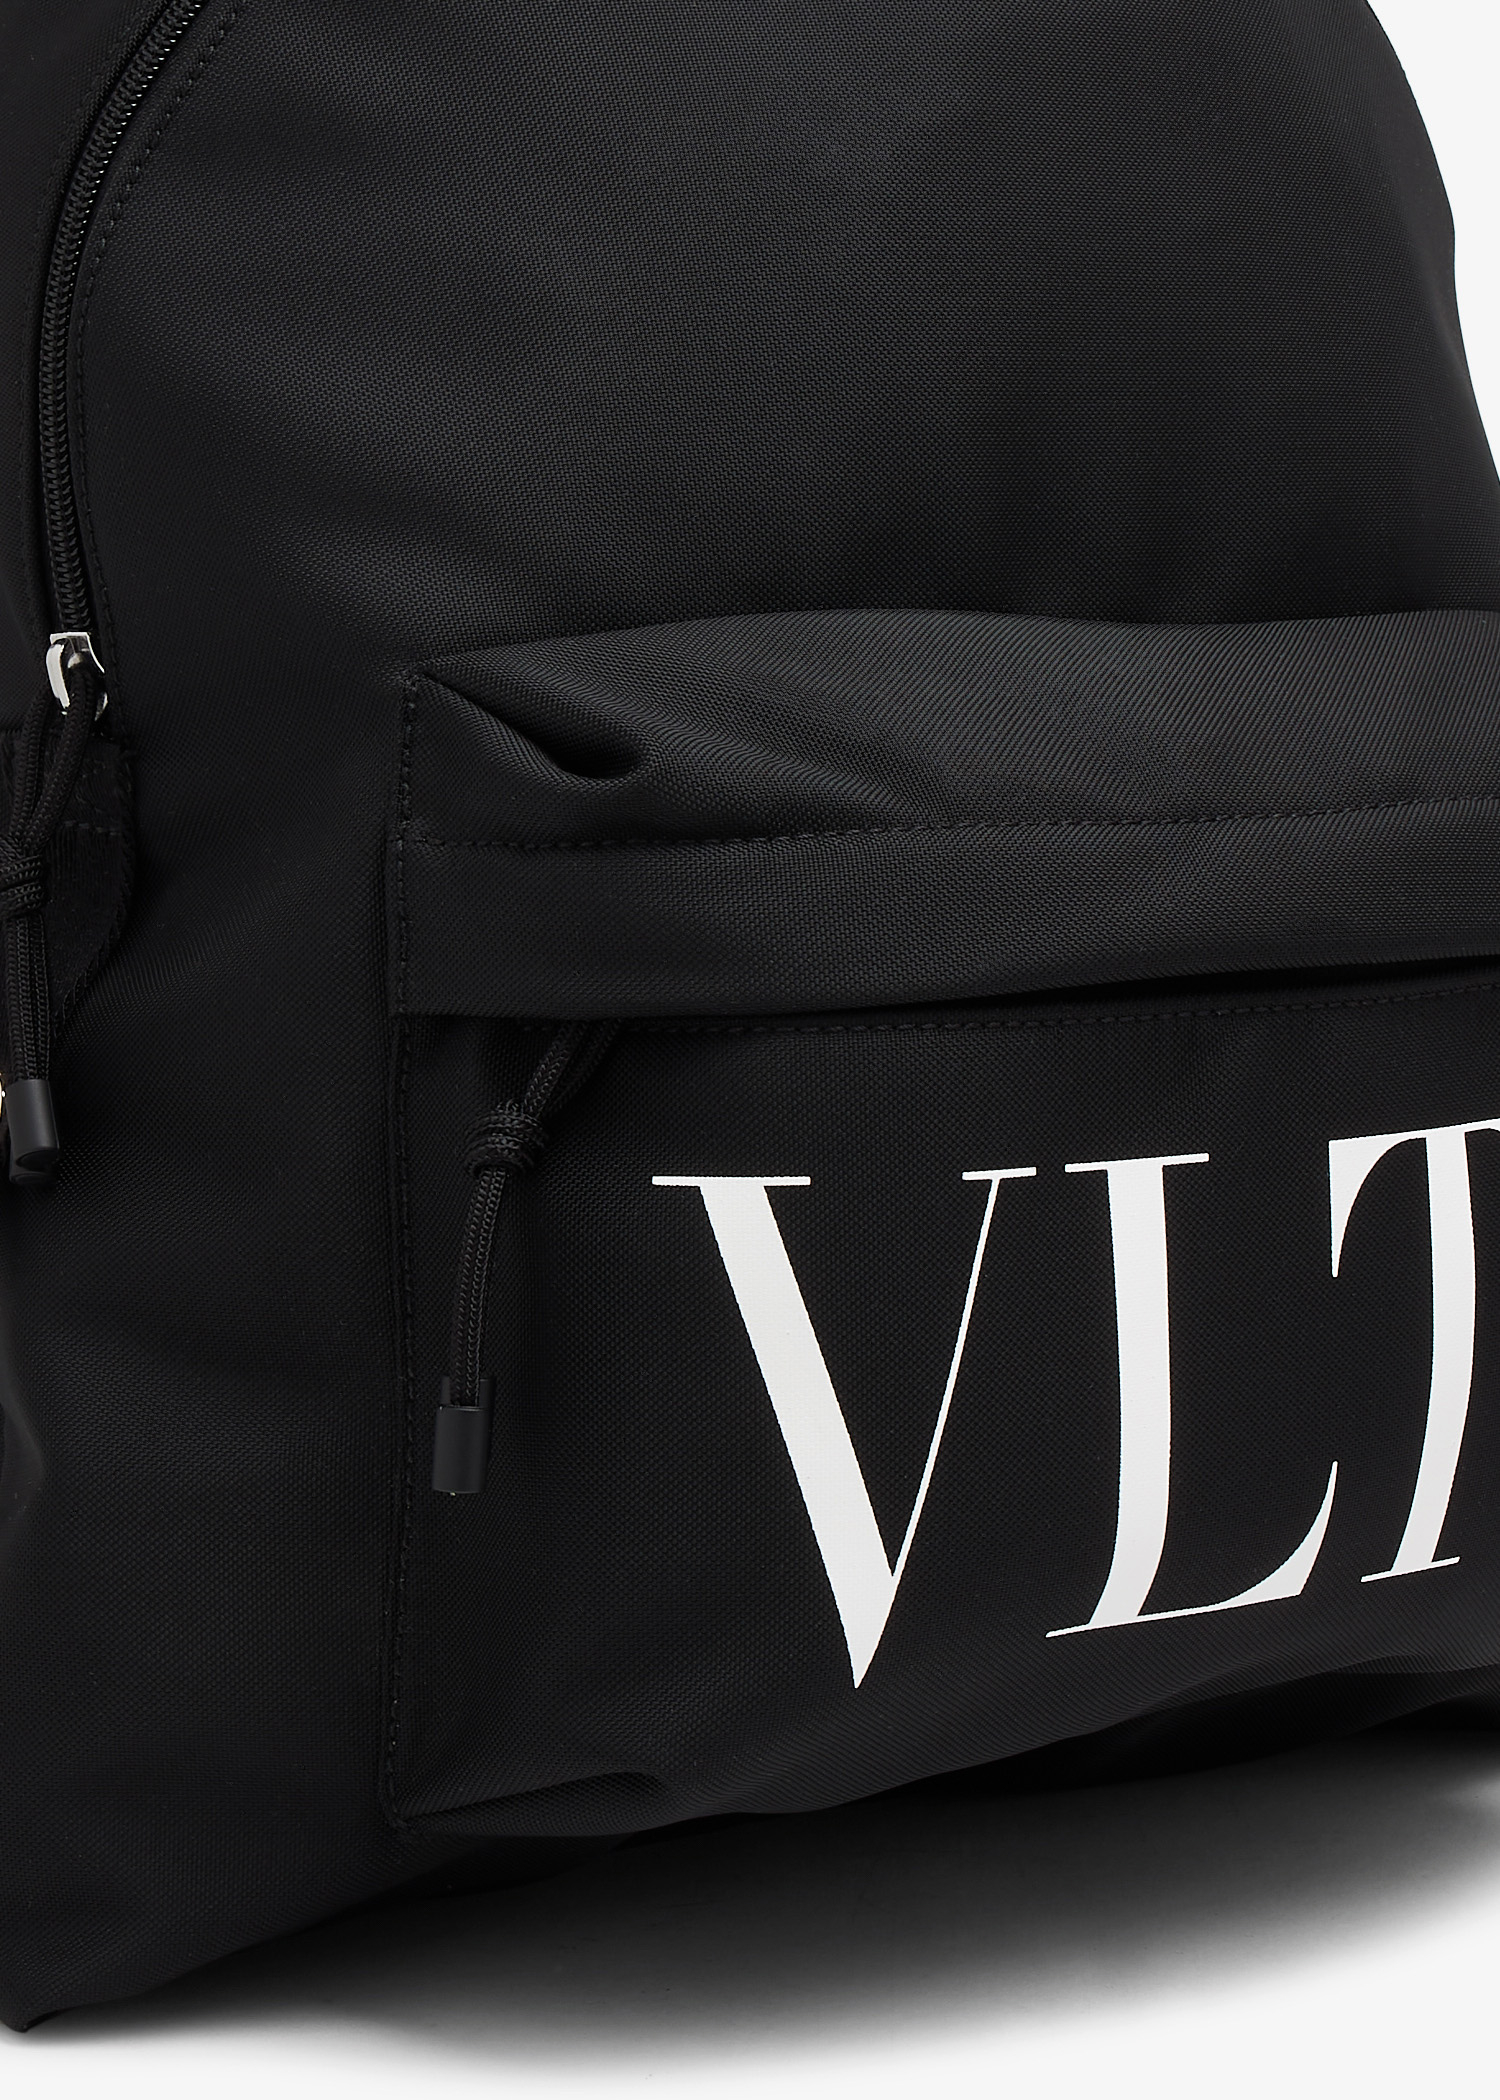 Valentino Garavani VLTN backpack for Men - Black in KSA